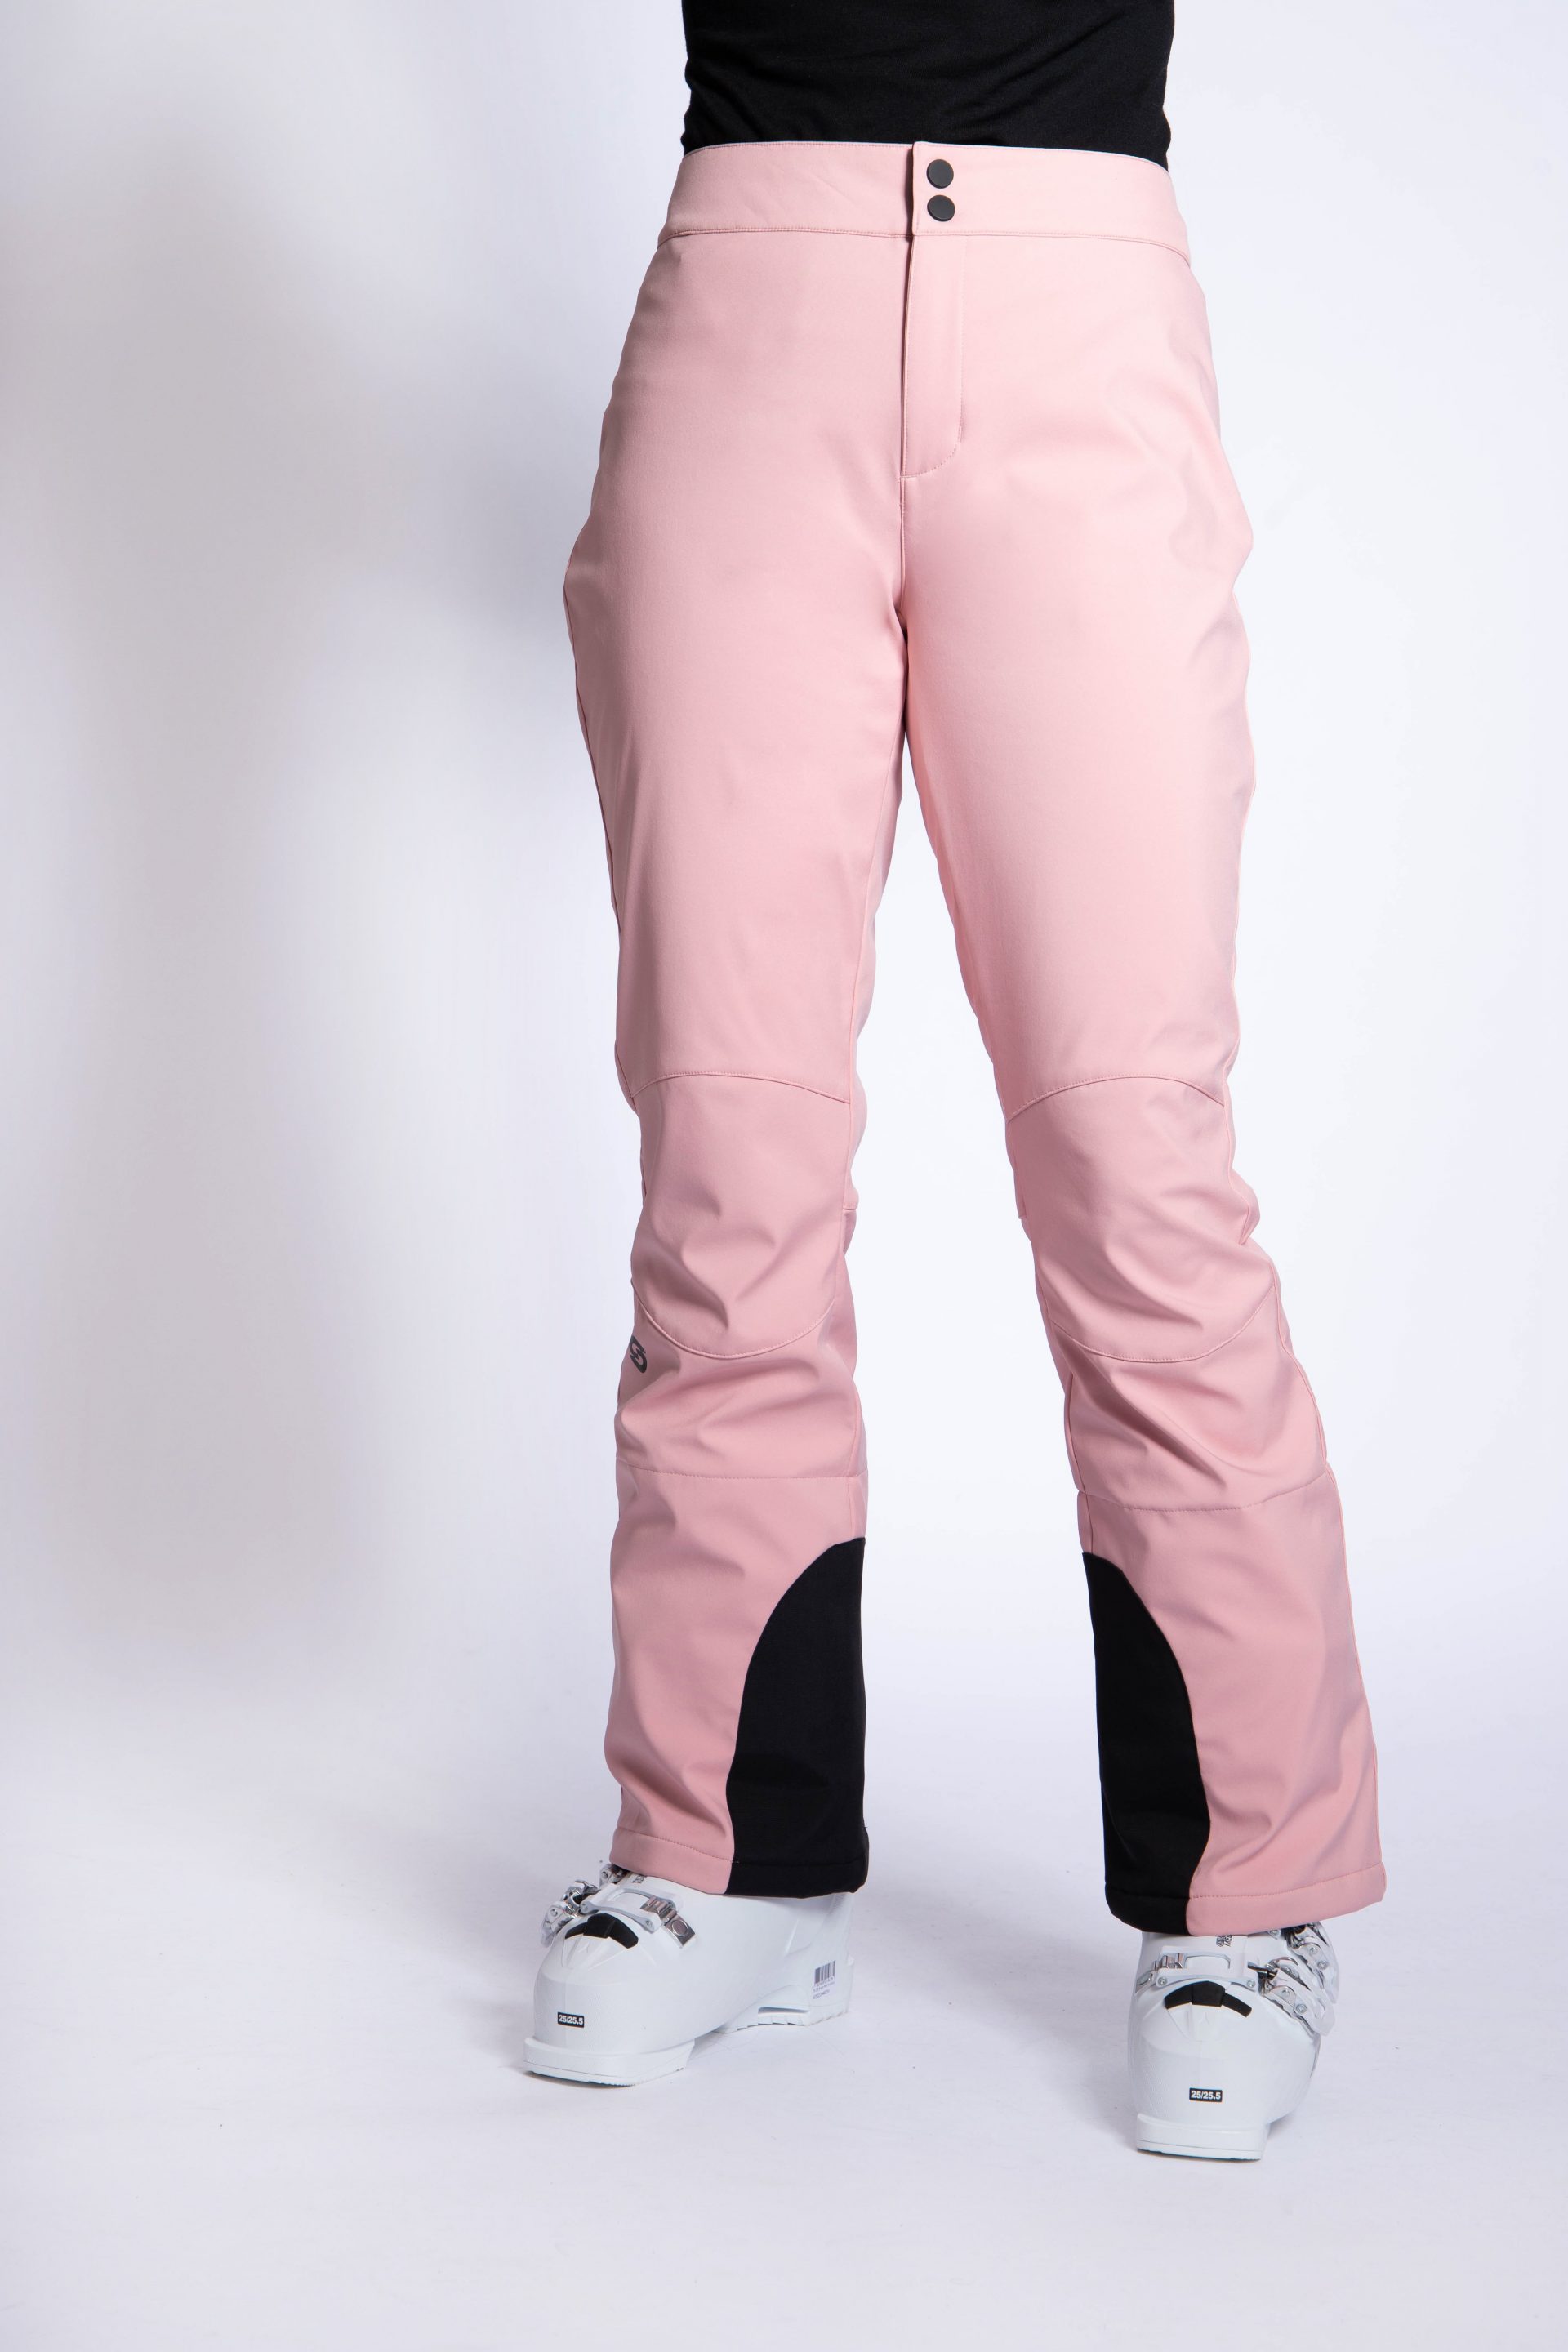 Fab Ski Pants Sakura Pink - Women's - Strobe